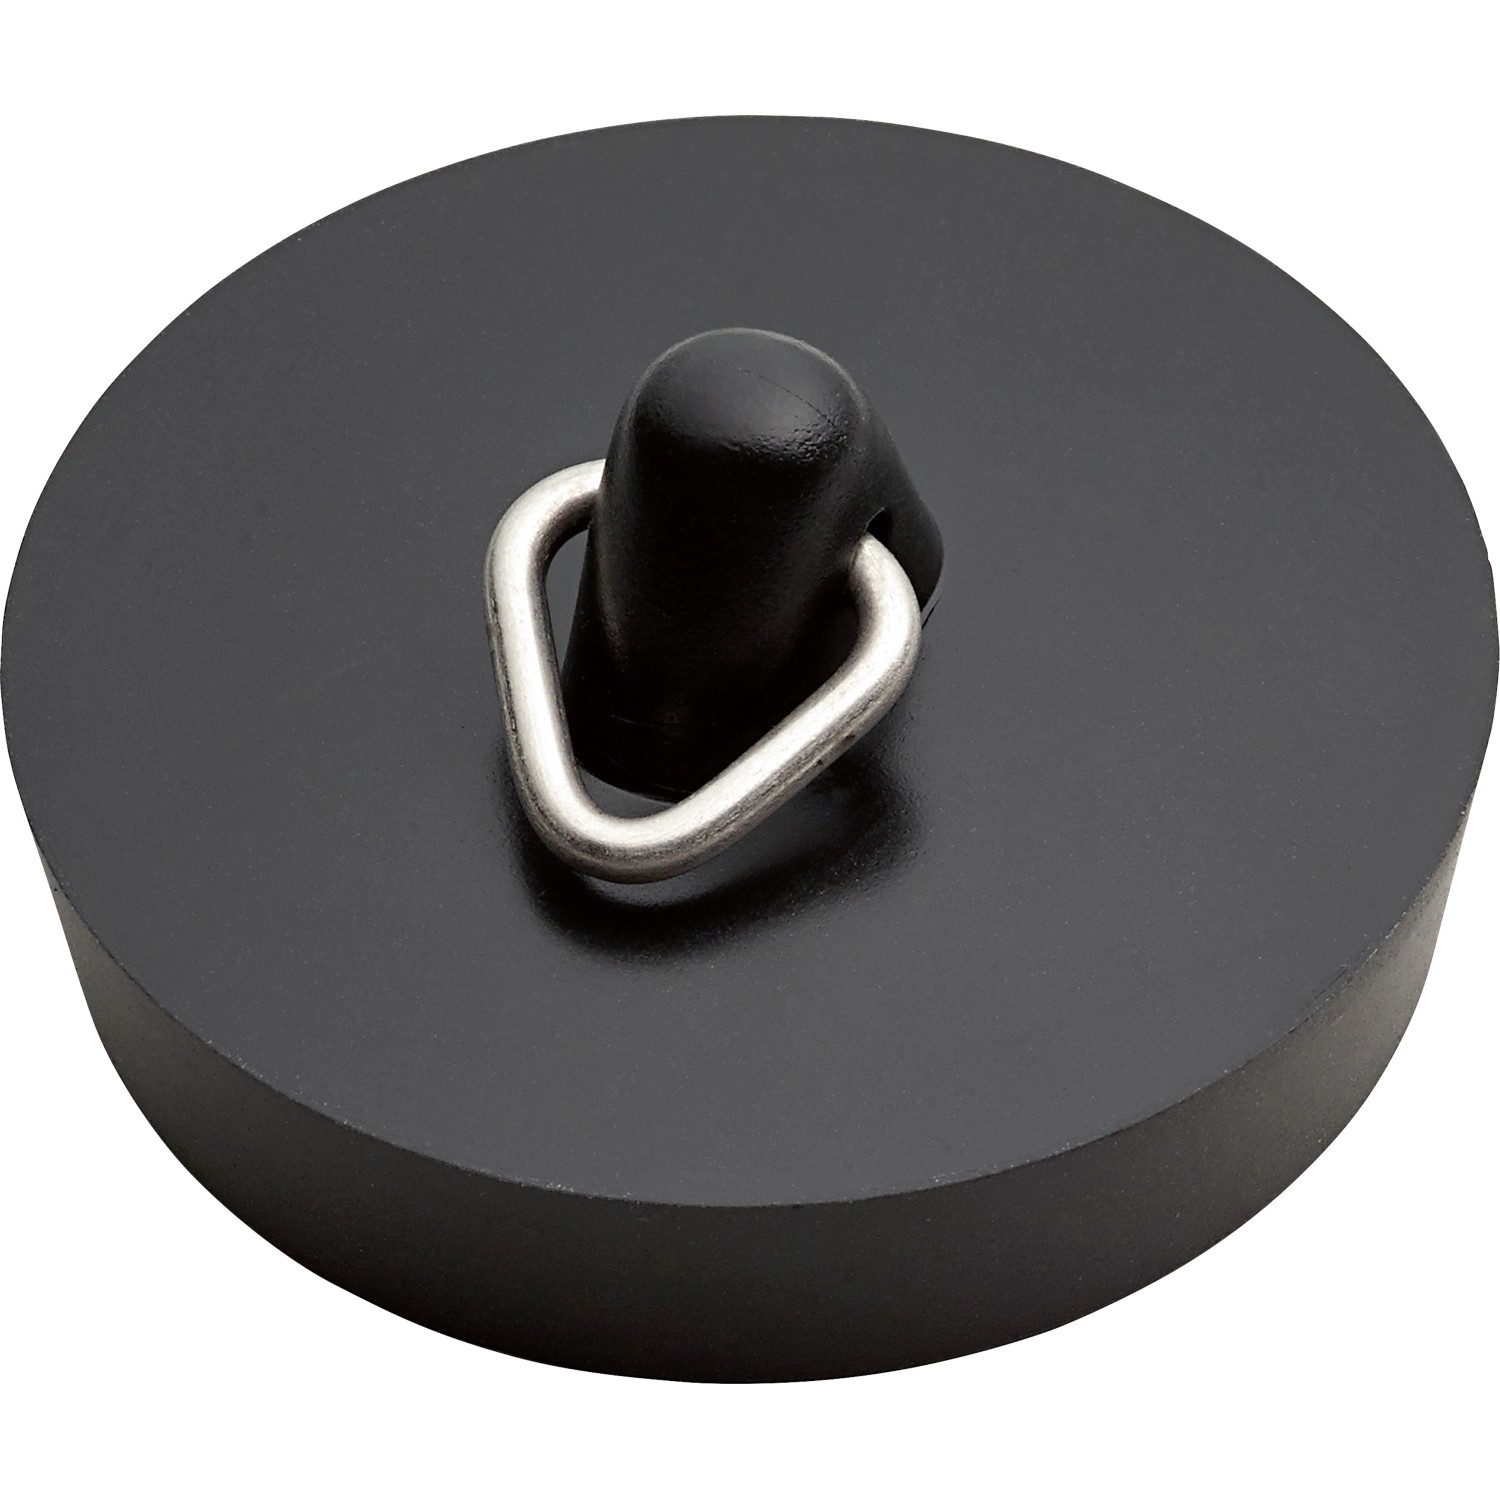 Gummistopfen mit Magnet matt Schwarz Ø 45,5 mm kaufen bei OBI